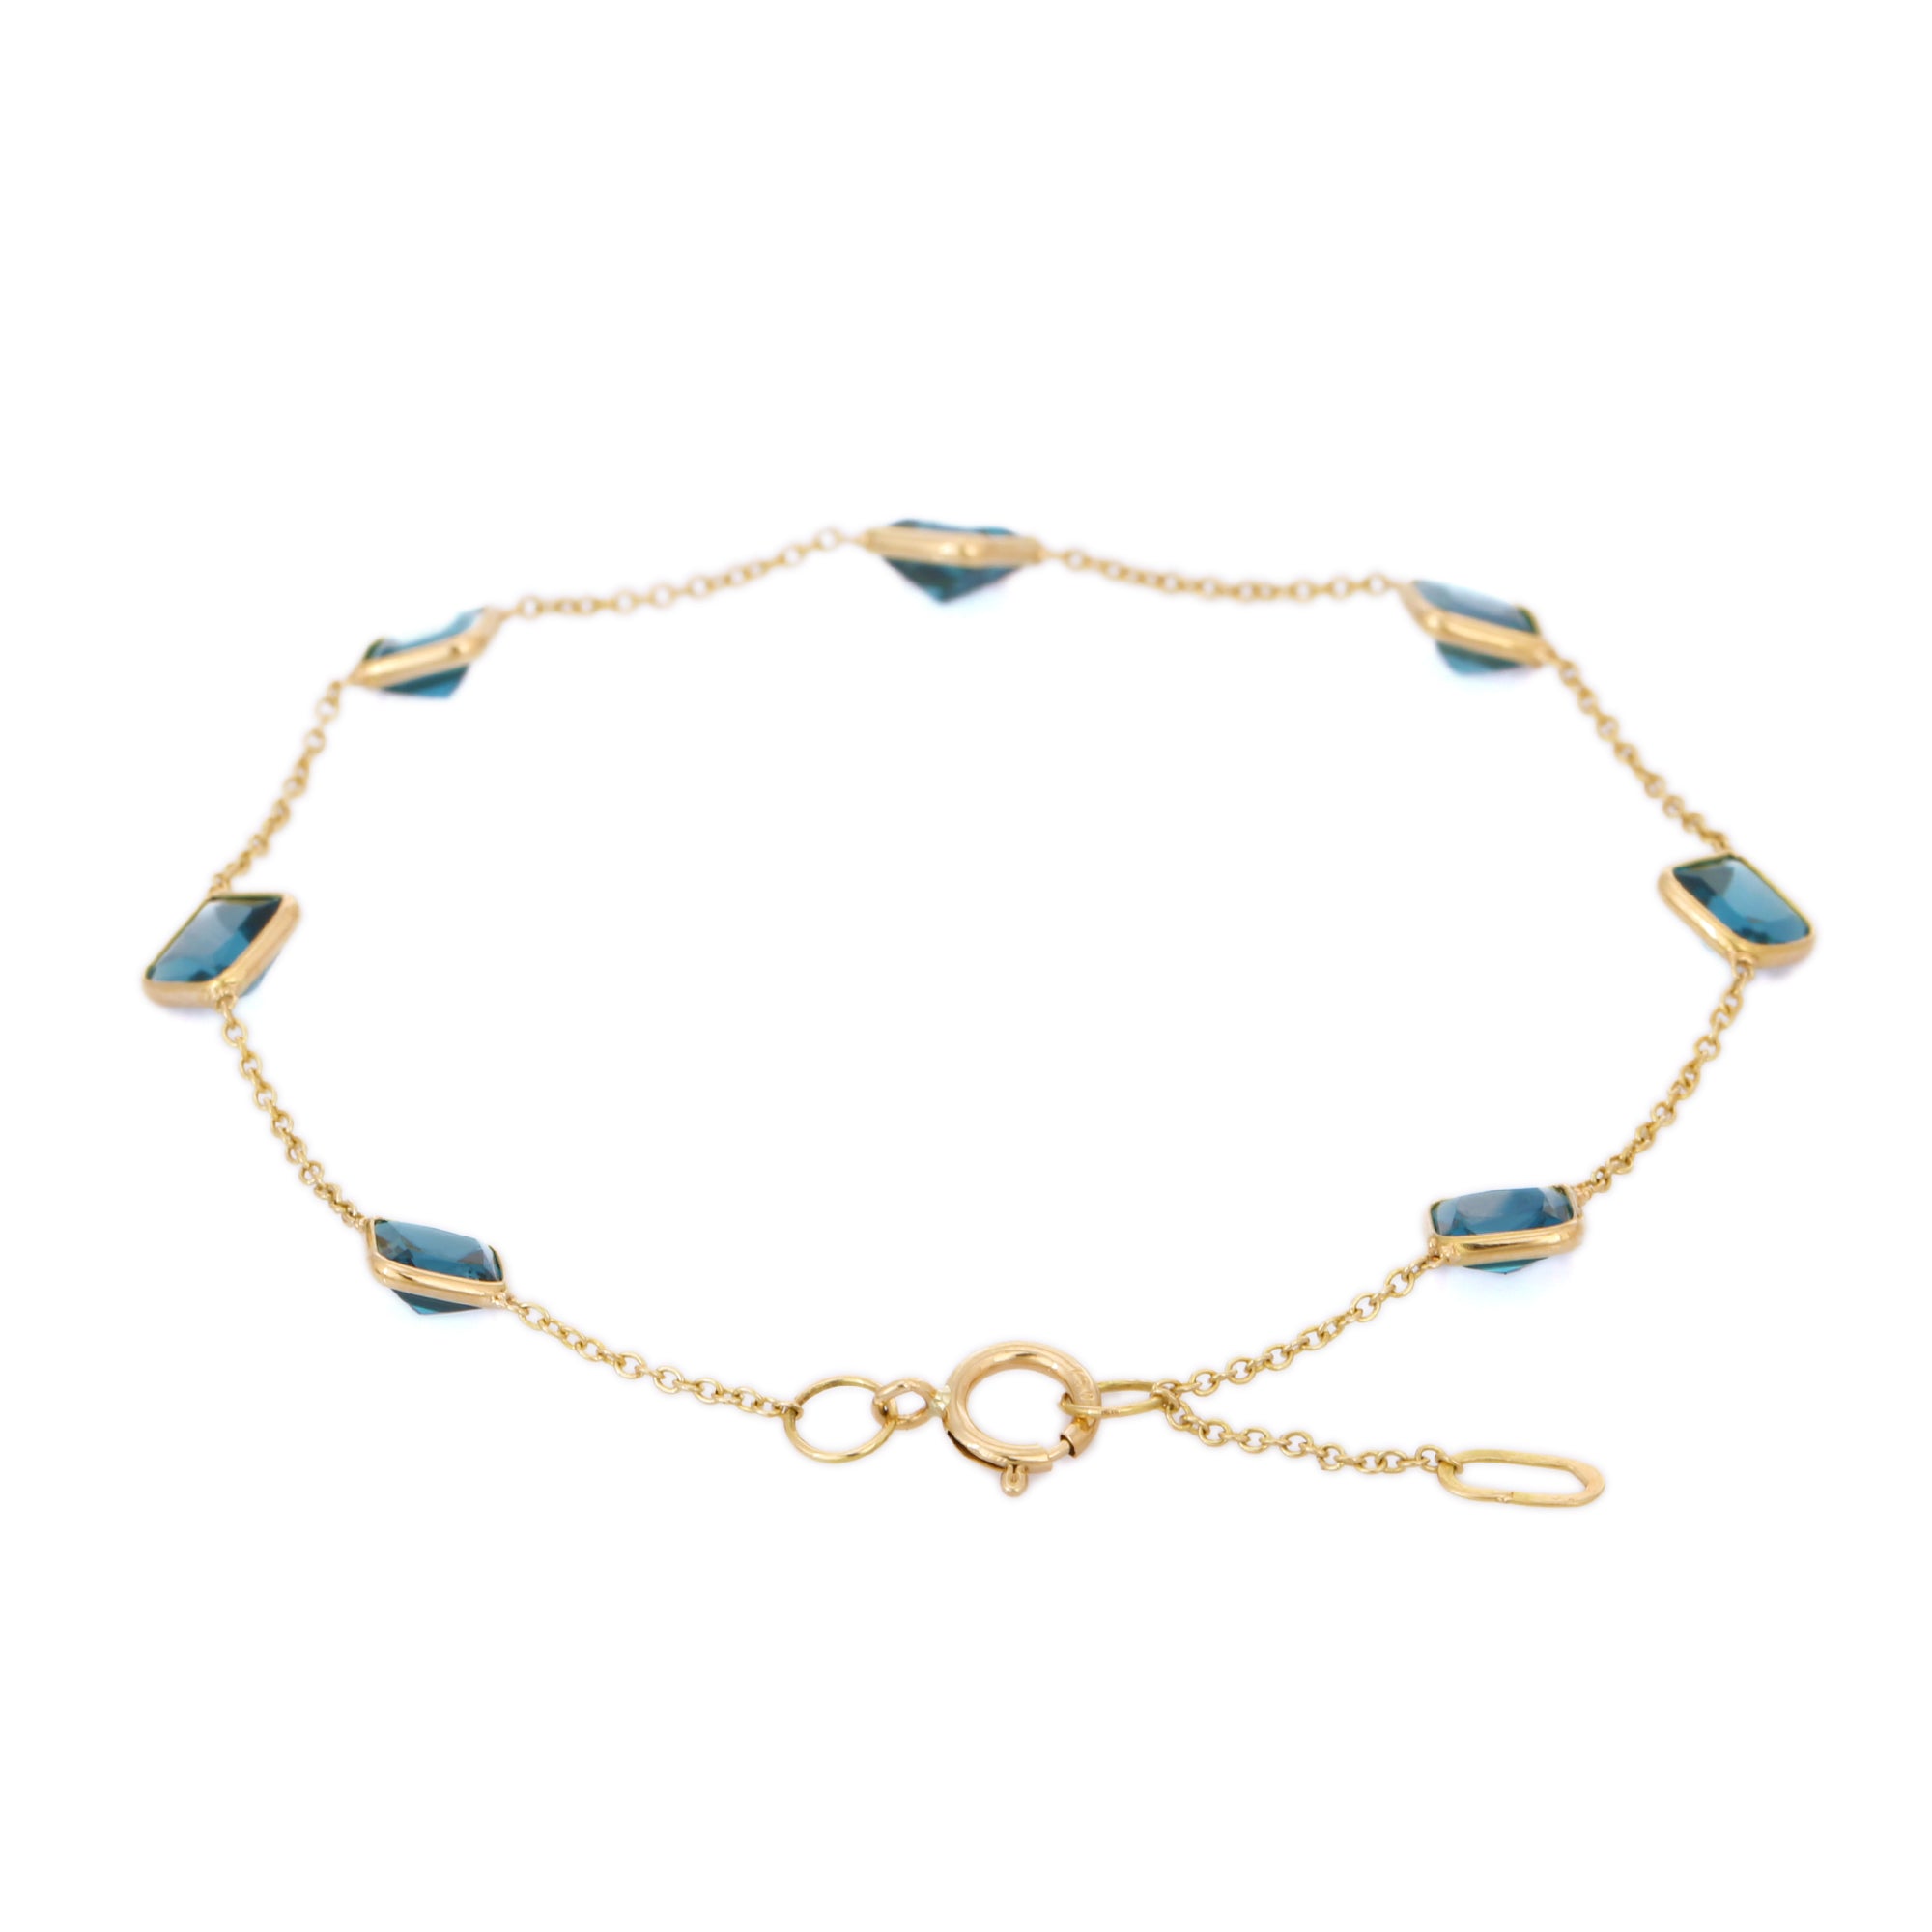 18K Yellow Gold Bracelet With Blue Topaz Gemstone - VR Jewels